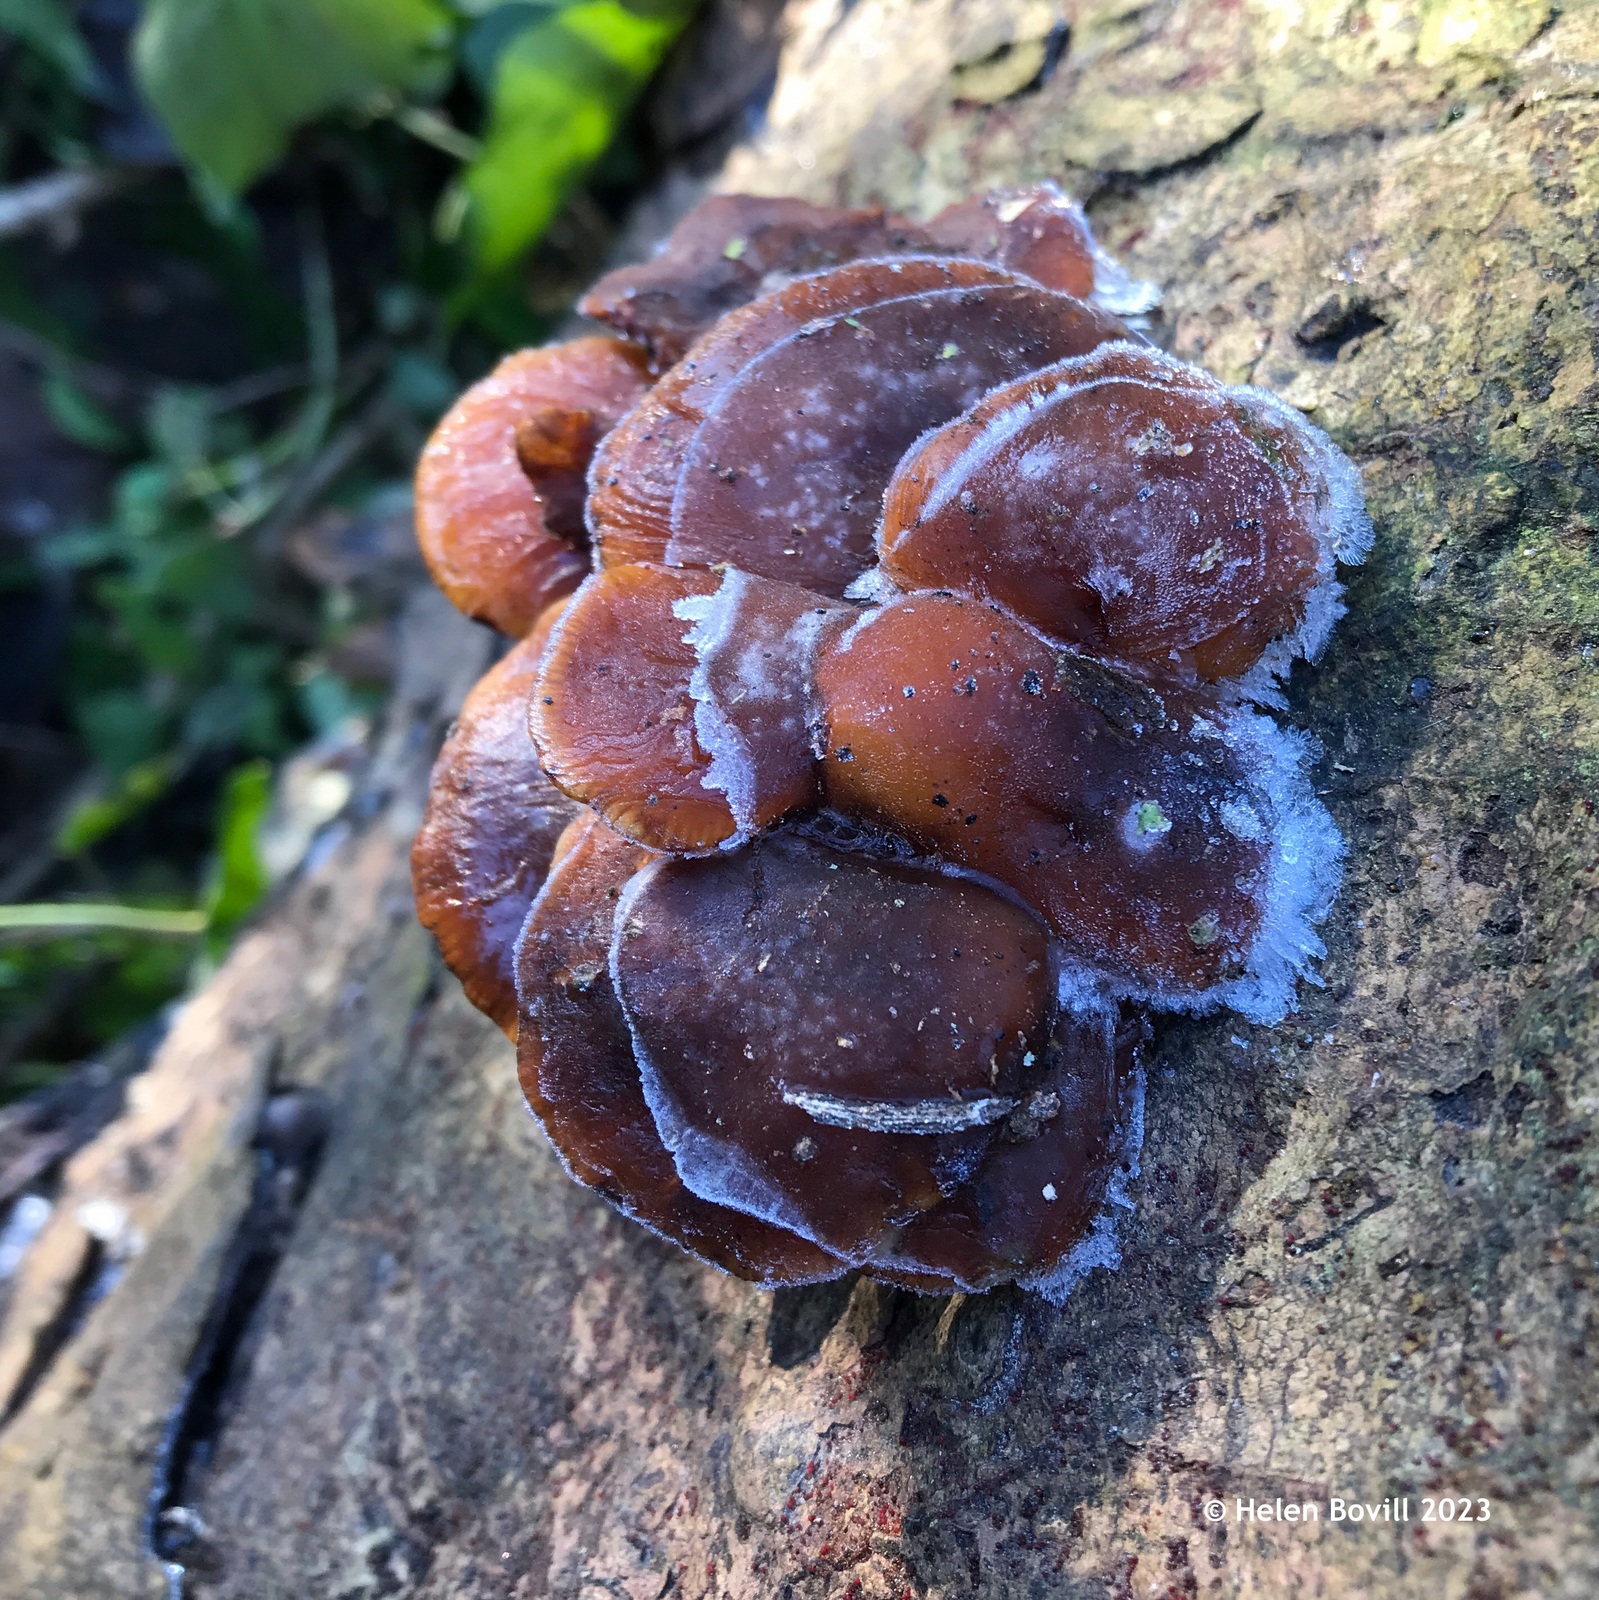 Some frozen Velvet Shank mushrooms heavily covered in frost